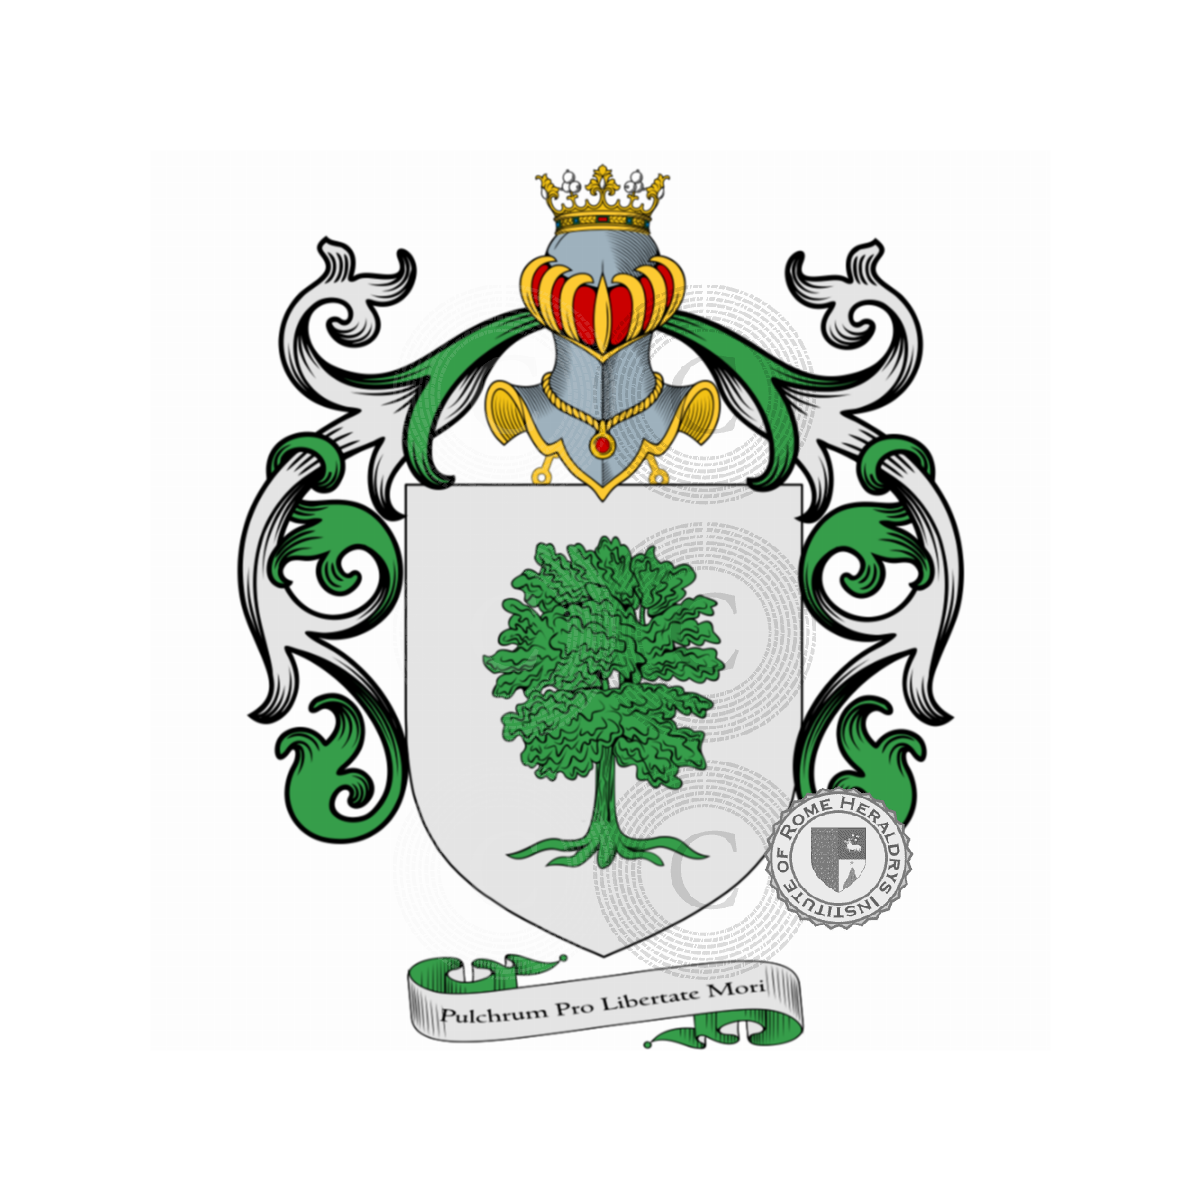 Escudo de la familiaFachinetti, Facchinetti,Fachenetti